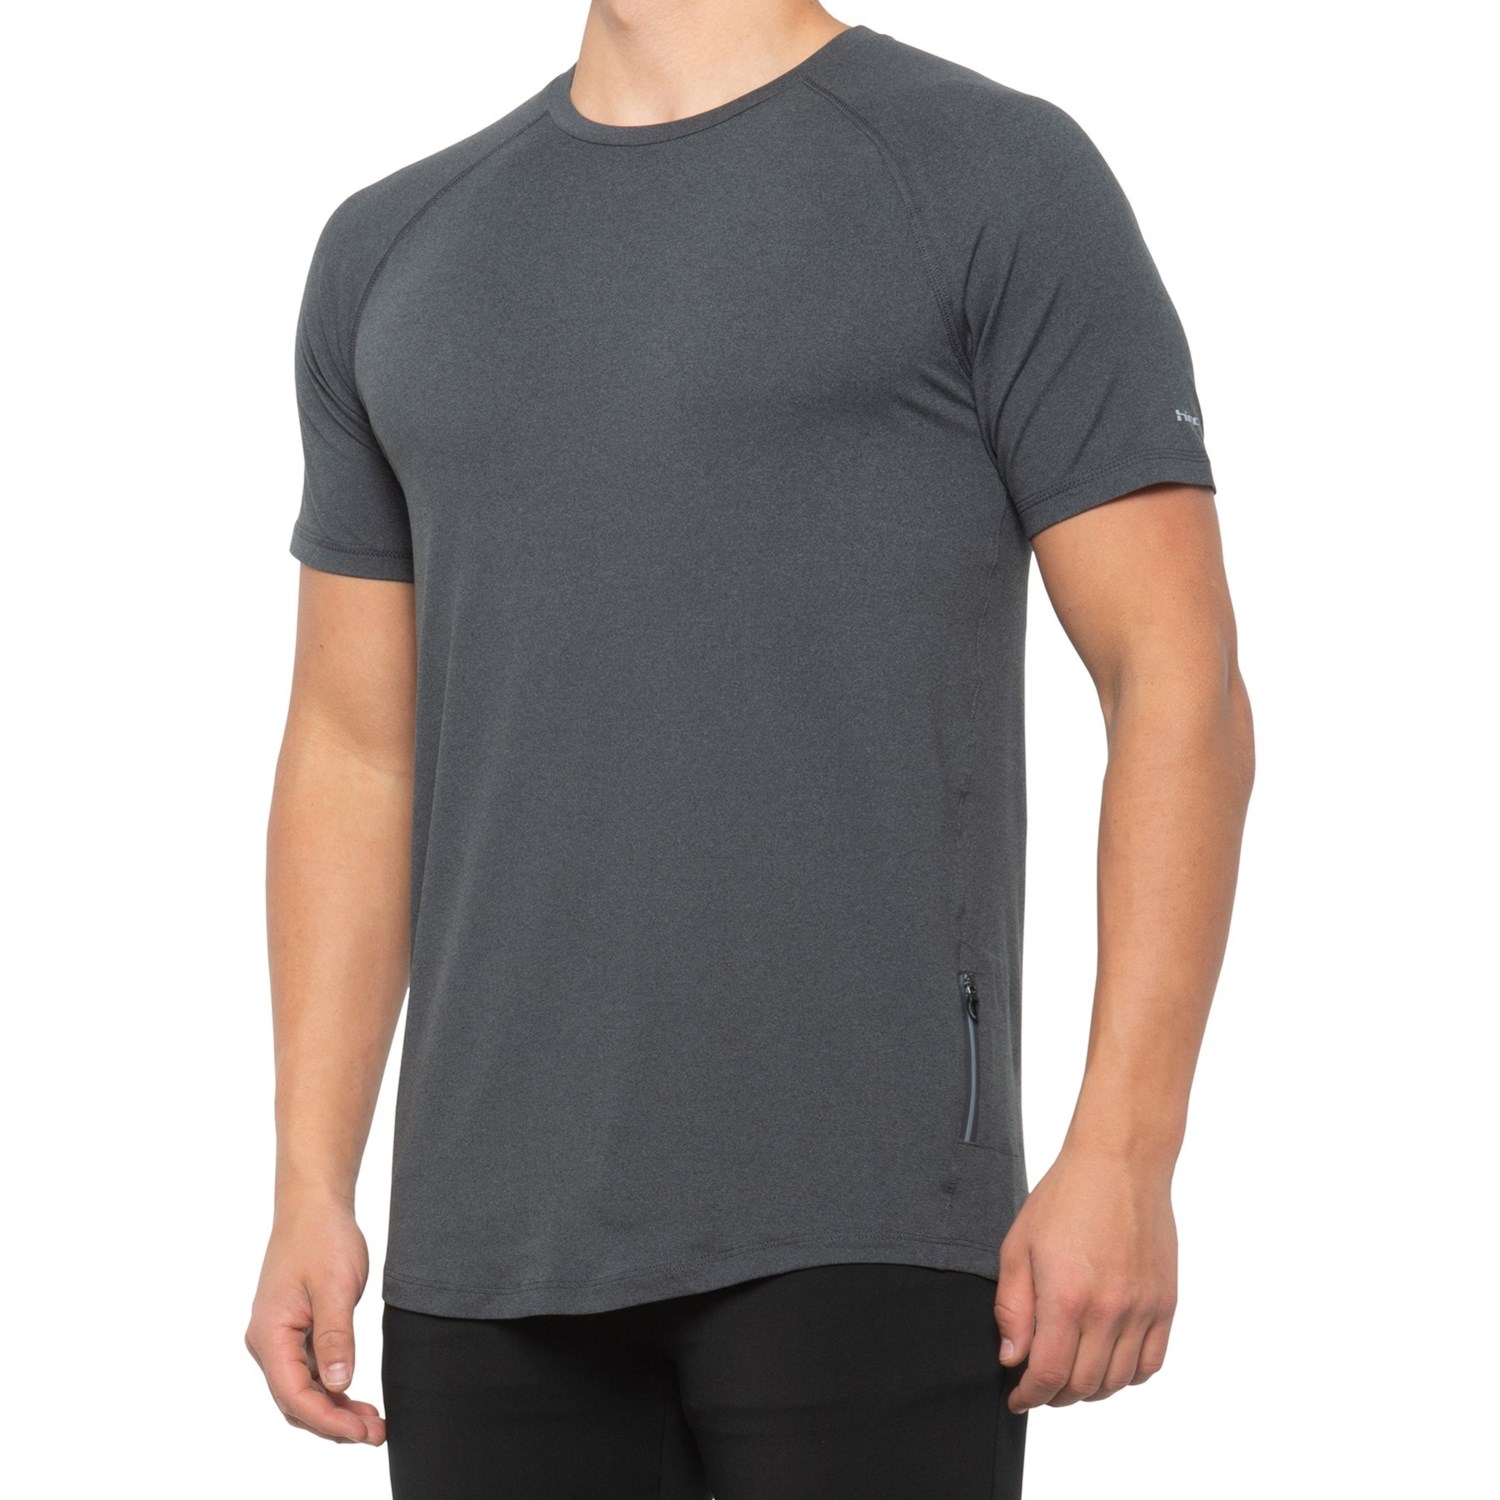 Hind Back Zip Pocket T-Shirt (For Men) - Save 50%